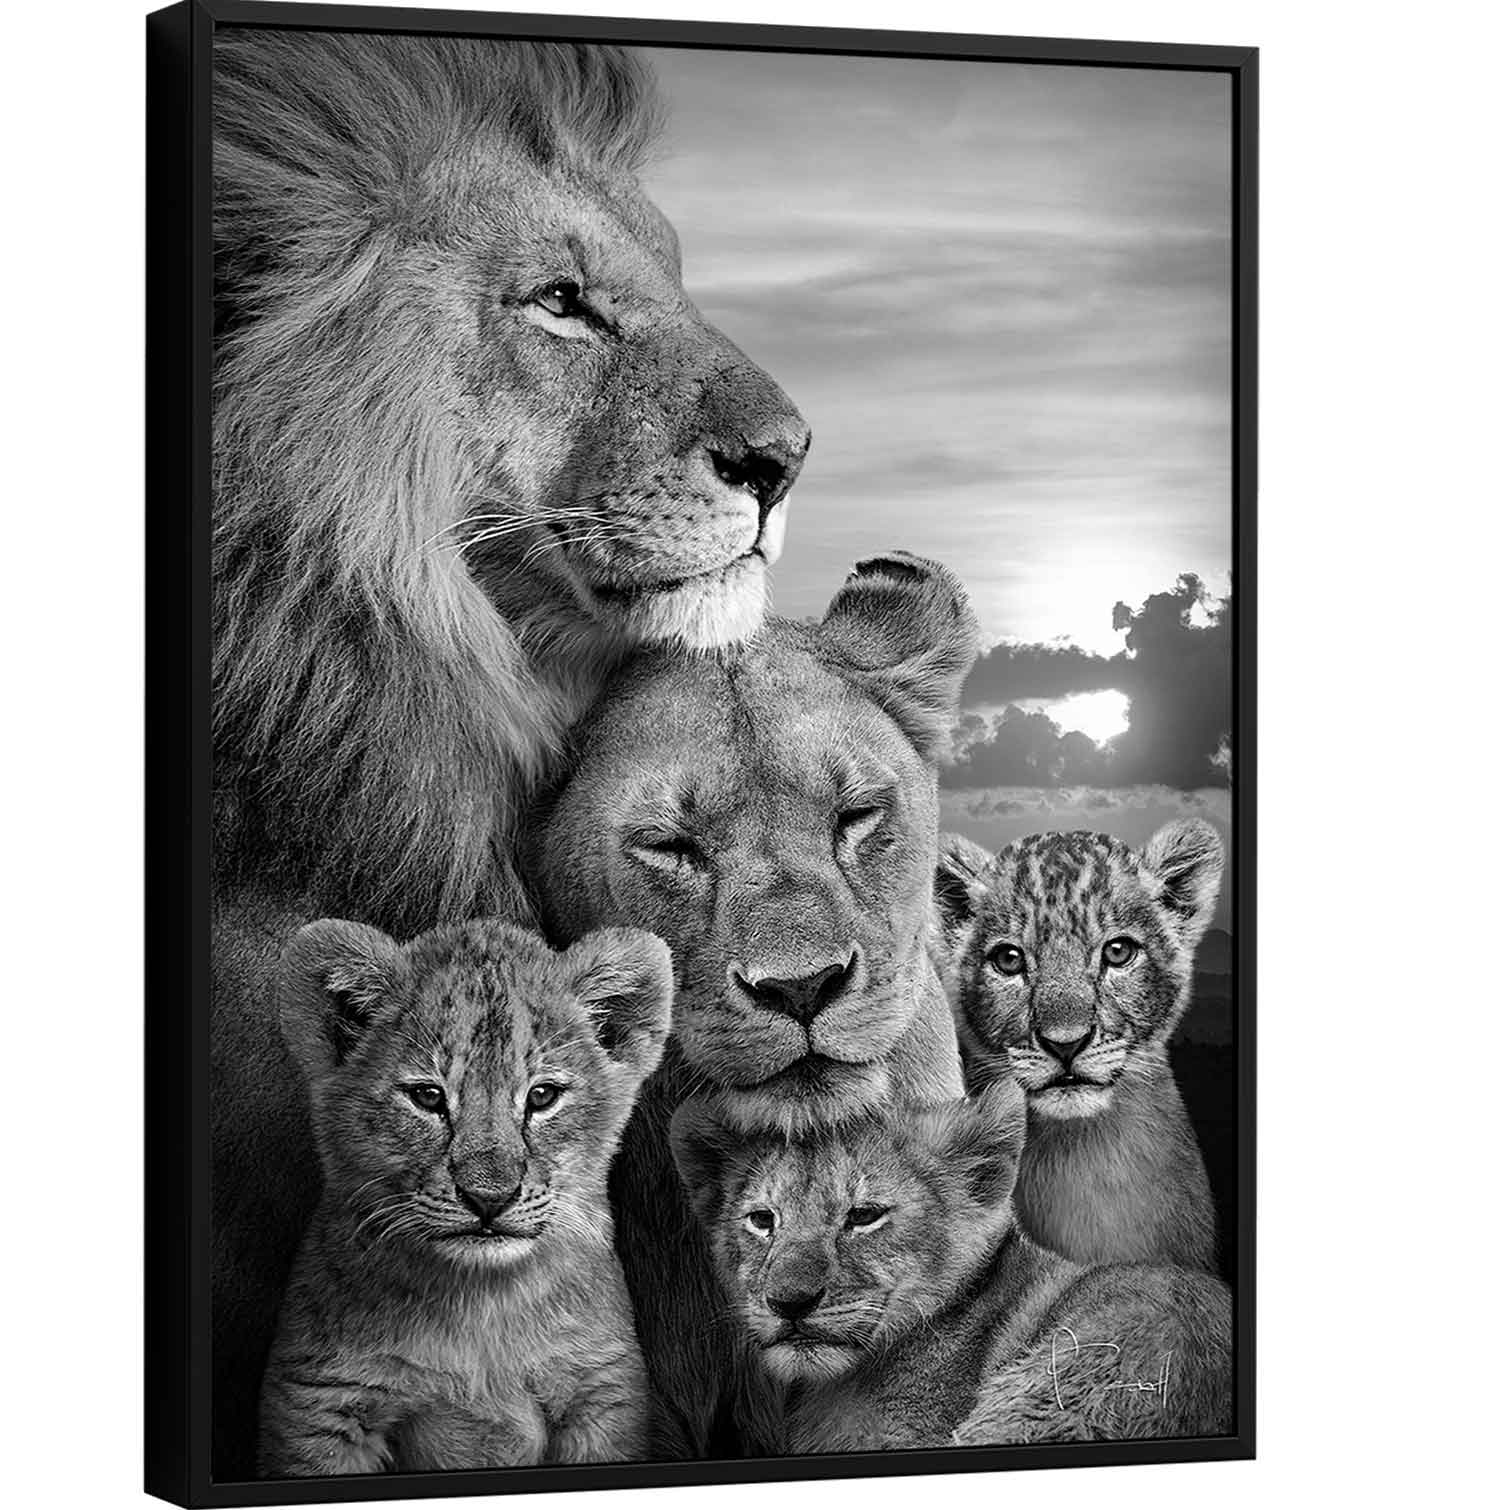 Quadro Família de Leões 3 filhotes Preto e Branco